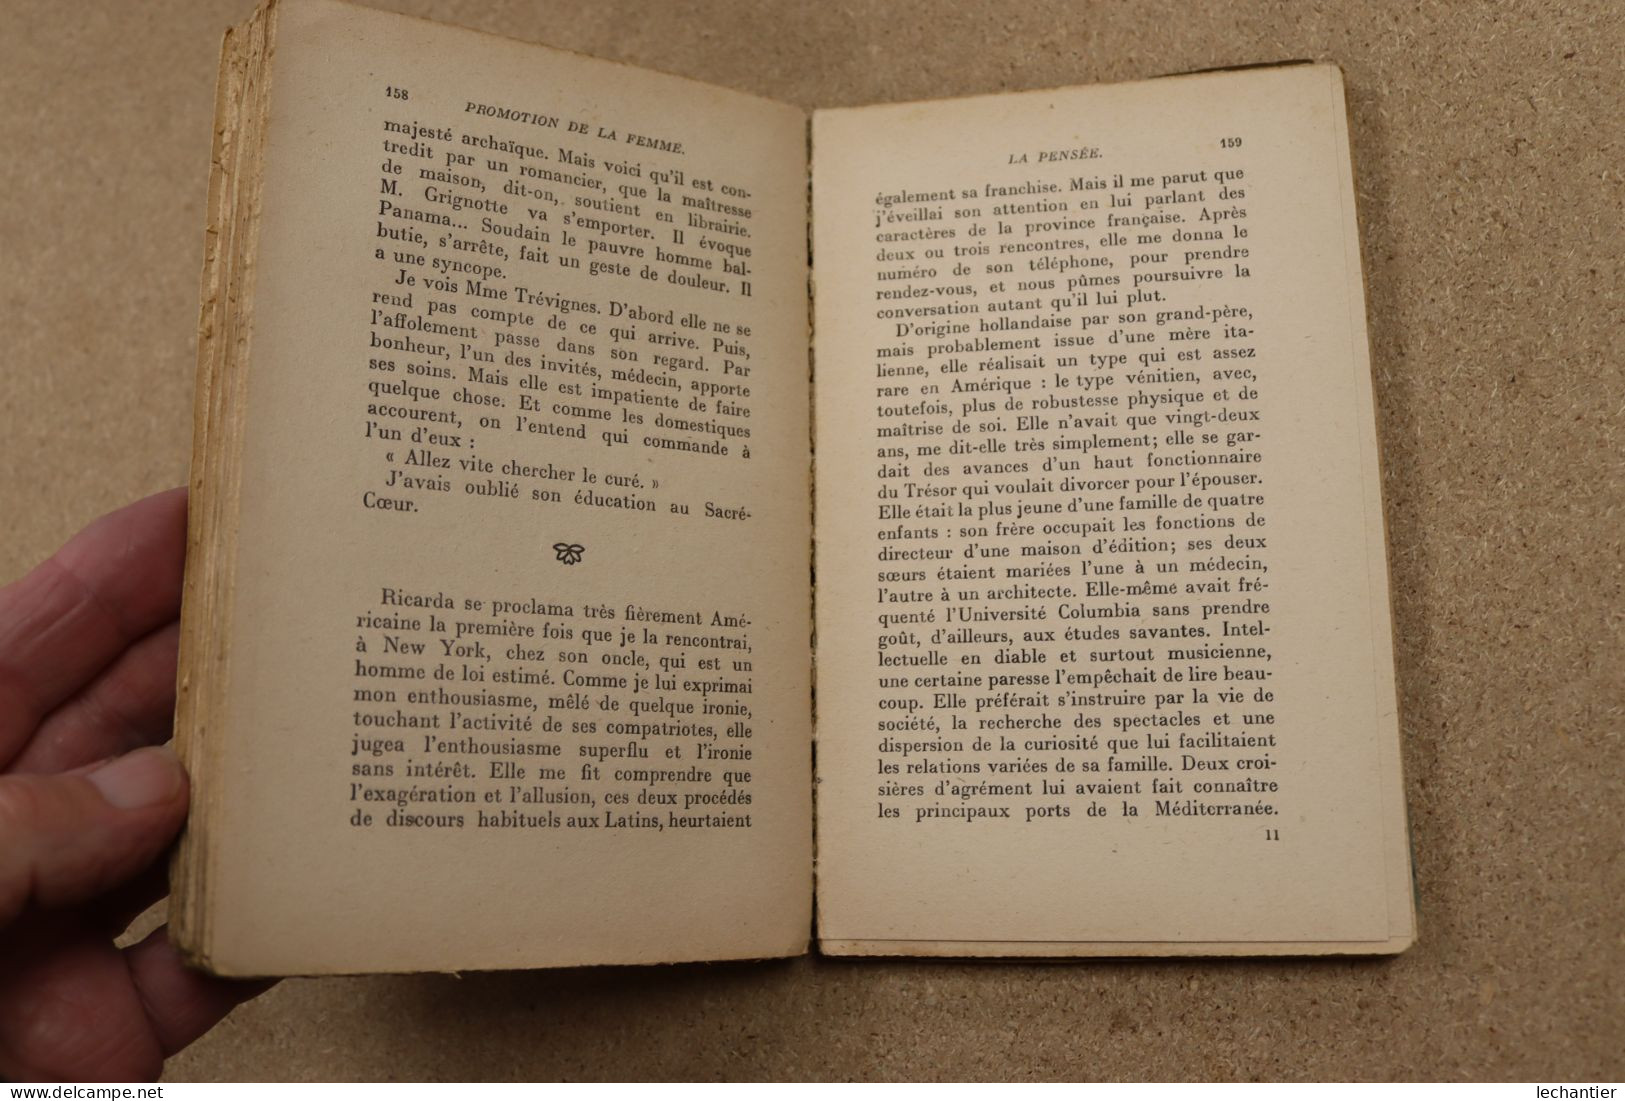 Promotion De La Femme - Lucien Romier - Hachette 1930 , 250 Pages 12,5X19 - Sociologie